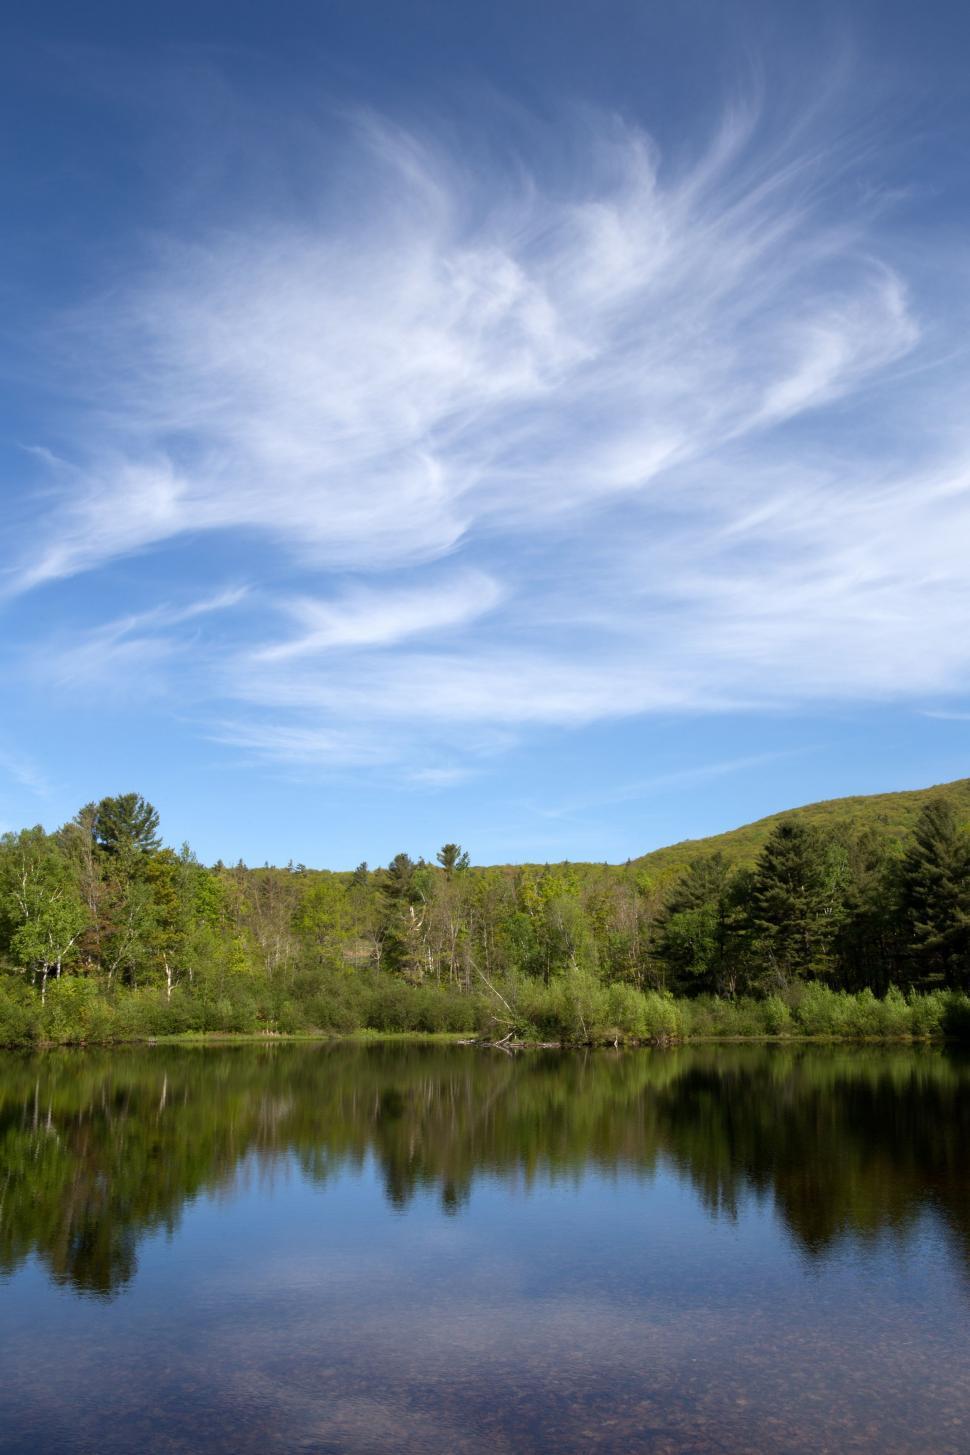 Free Image of Trees Reflection on Lake  